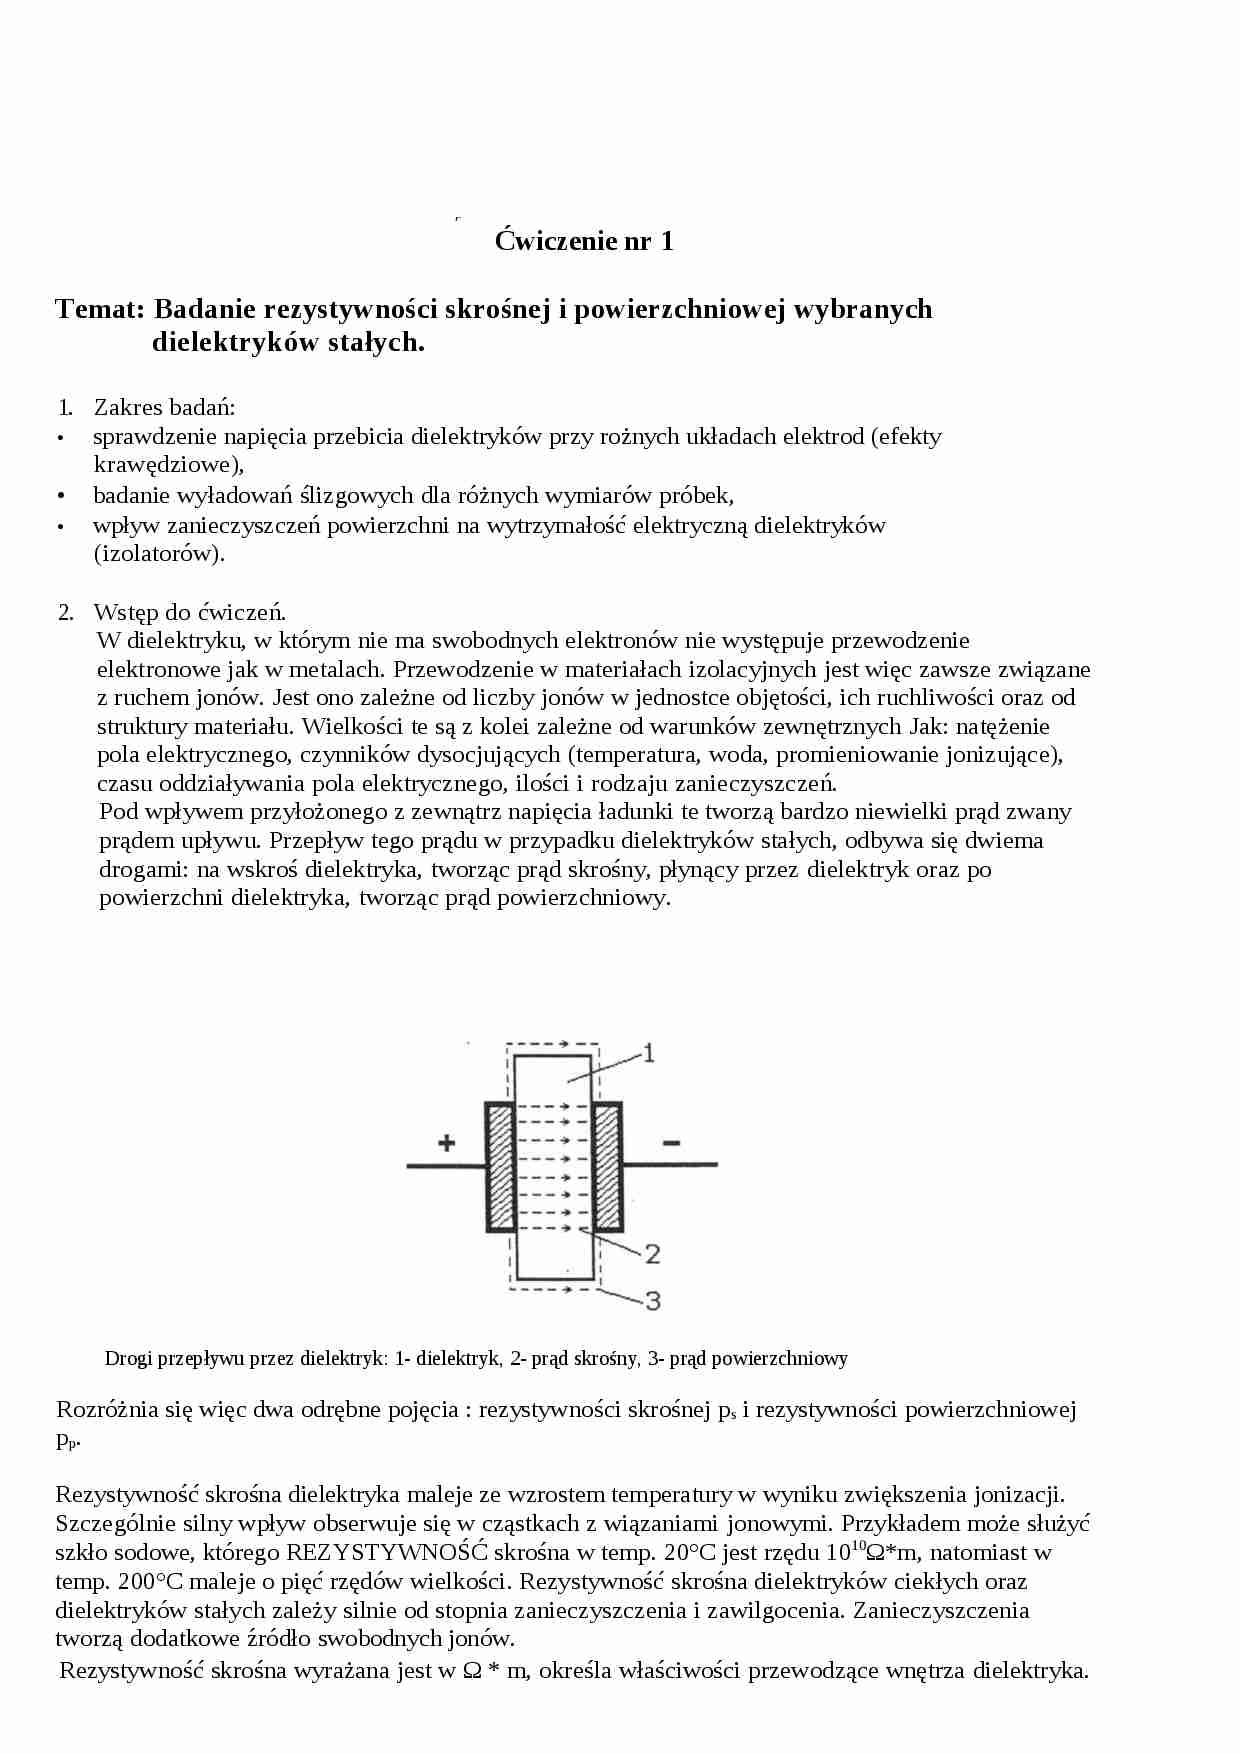  Badanie rezystywności skrośnej i powierzchniowej wybranych dielektryków stałych - omówienie - strona 1